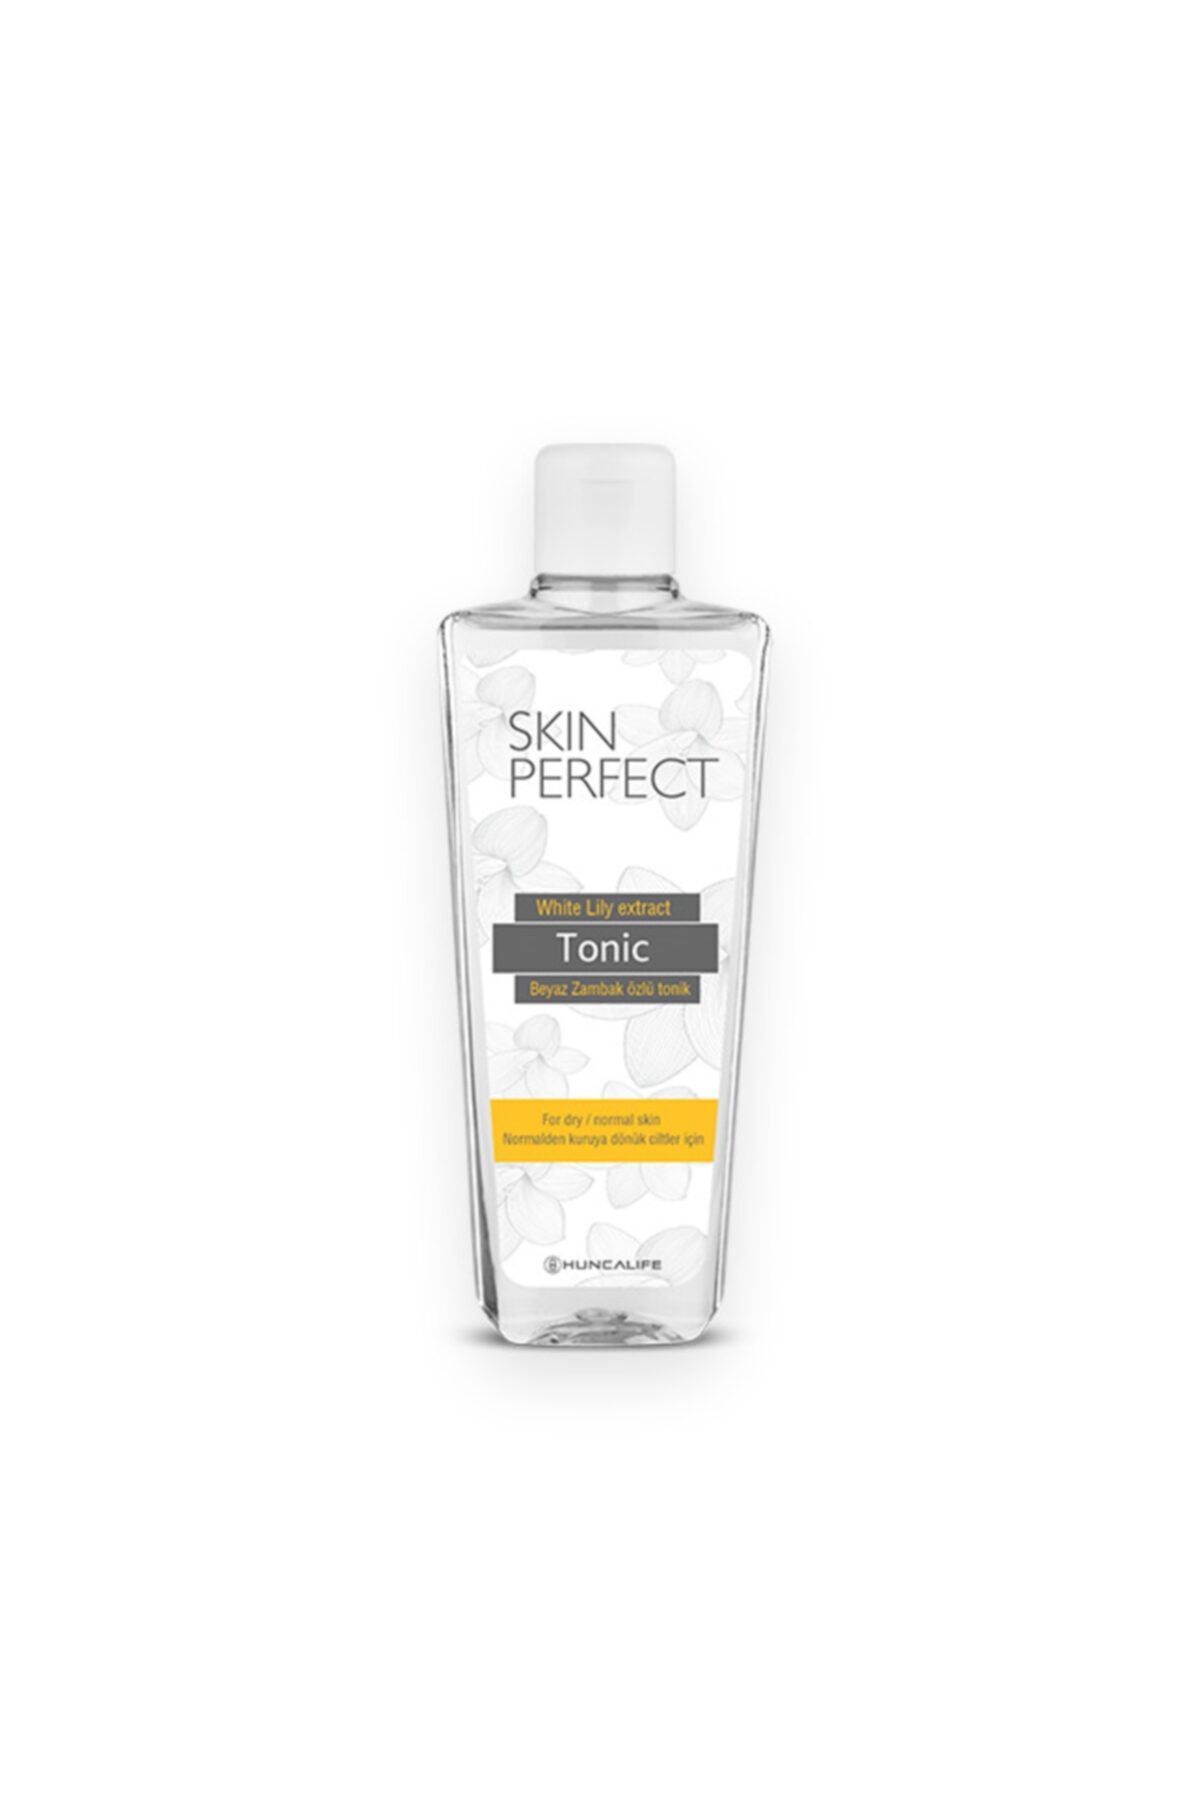 Huncalife Skin Perfect Beyaz Zambak Özlü Aydınlatıcı Tonik 150 ml